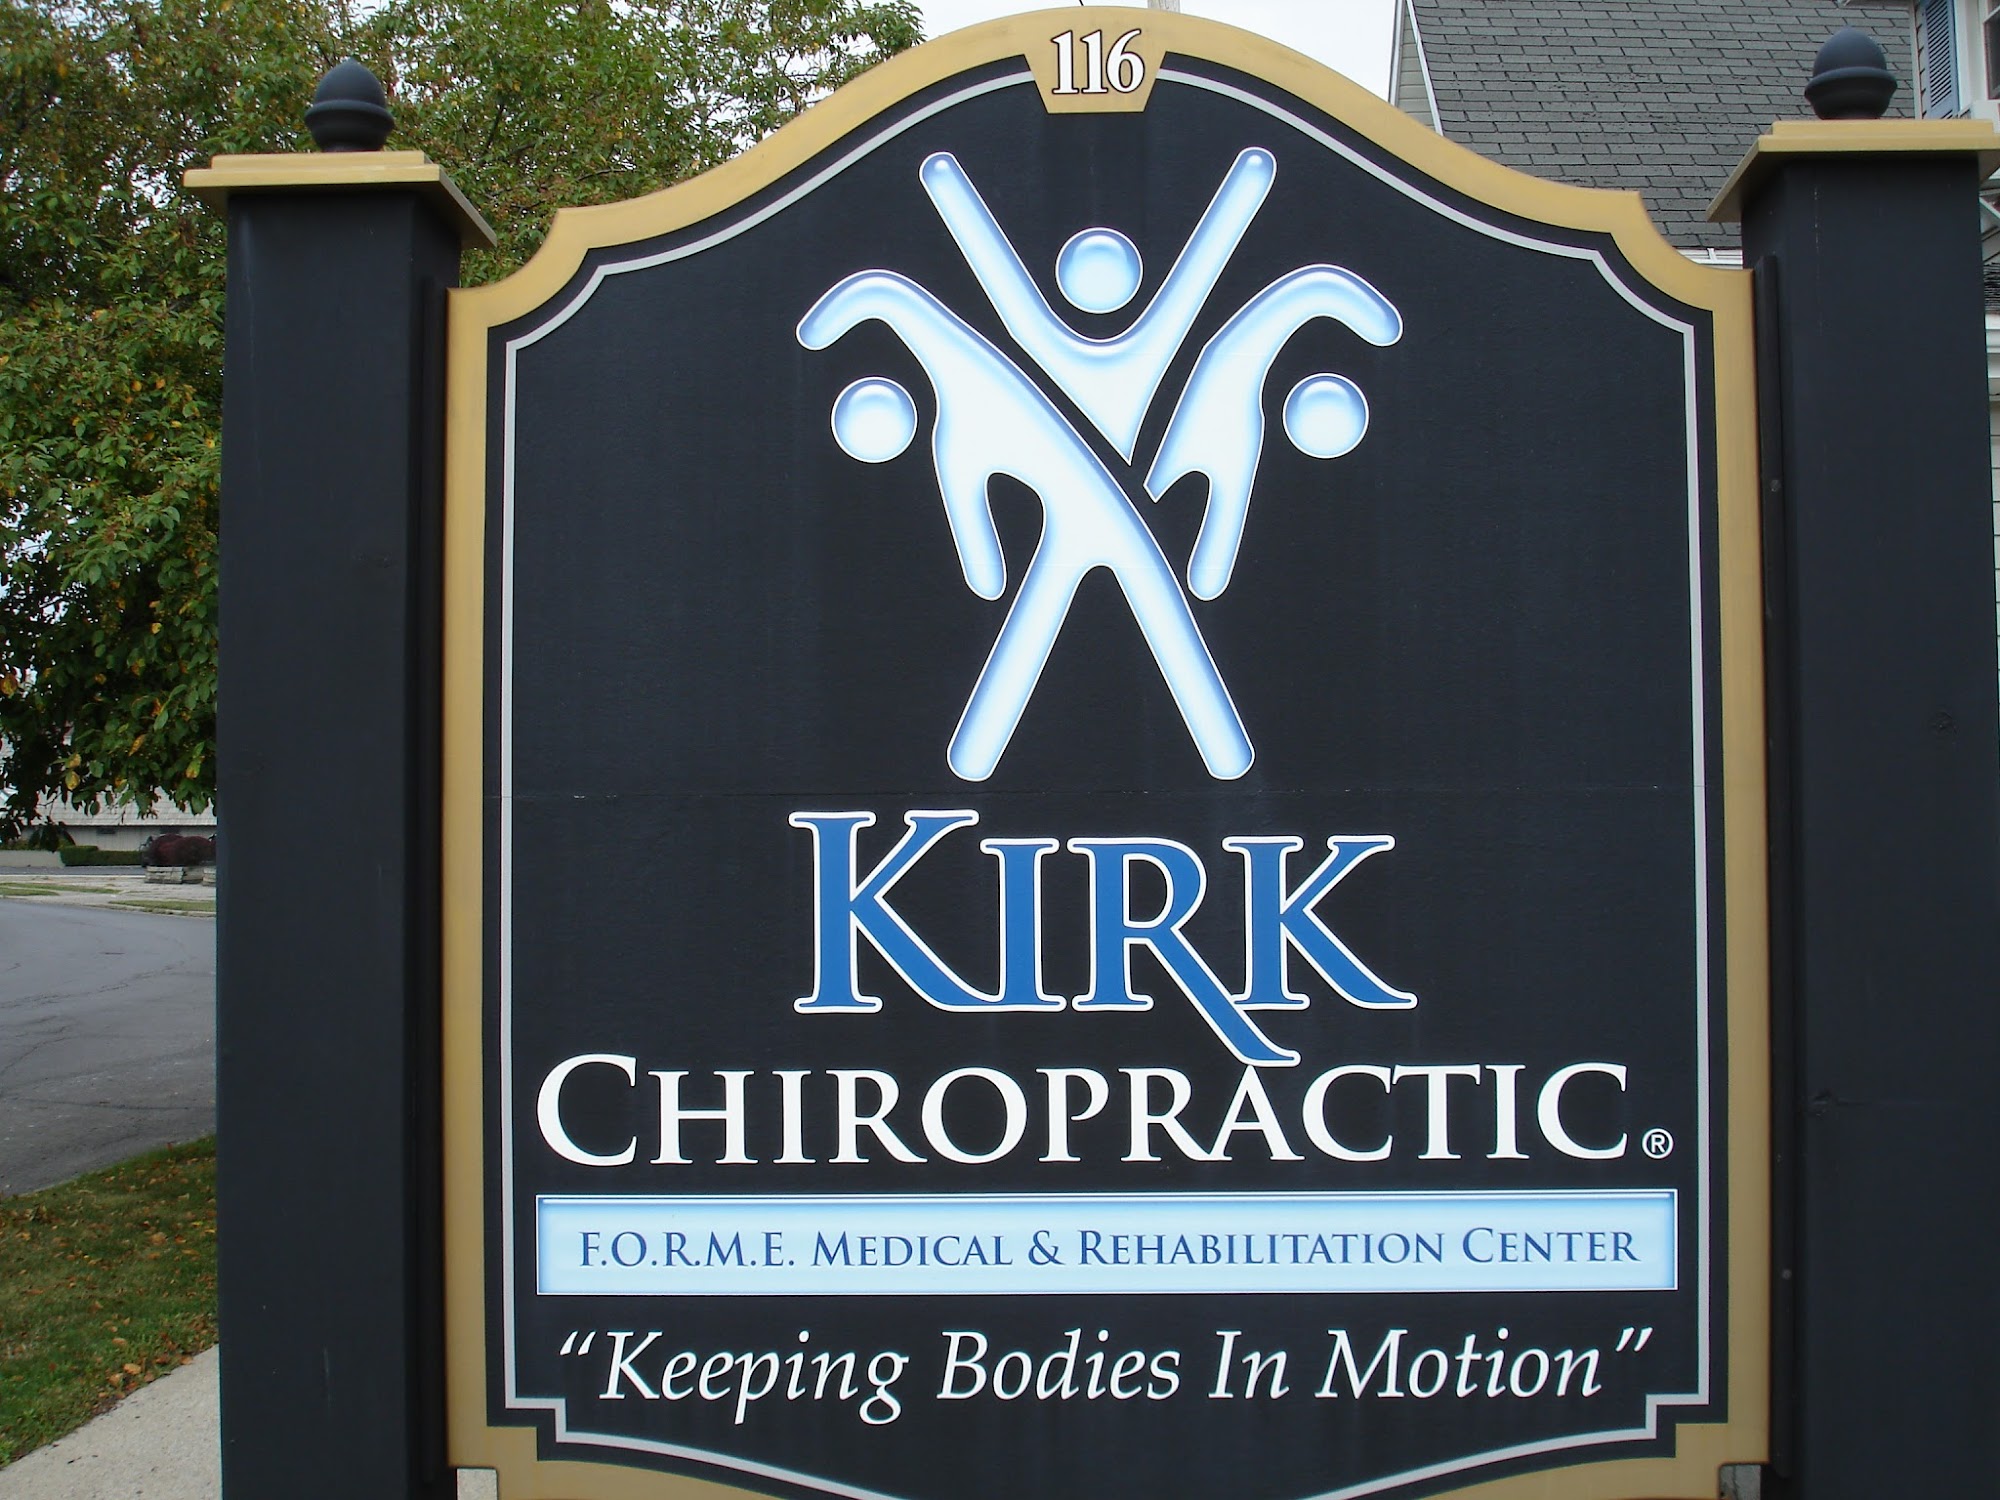 Kirk Chiropractic